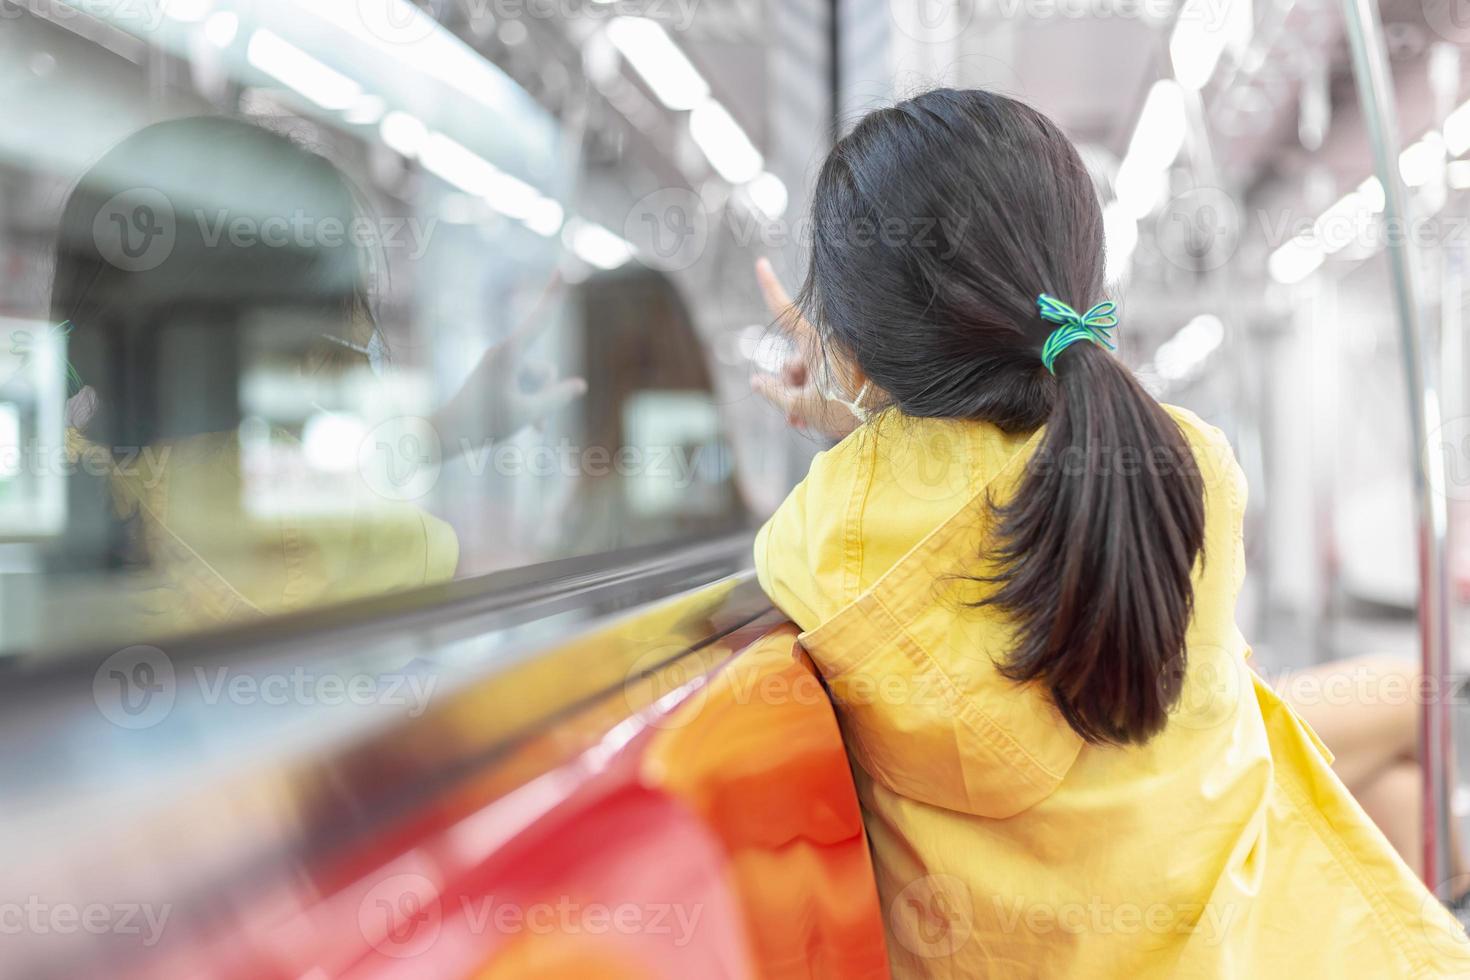 garota olhando pela janela do trem lá fora, enquanto se move. criança usa máscara facial durante surto de coronavírus e gripe, viajando de trem. foto